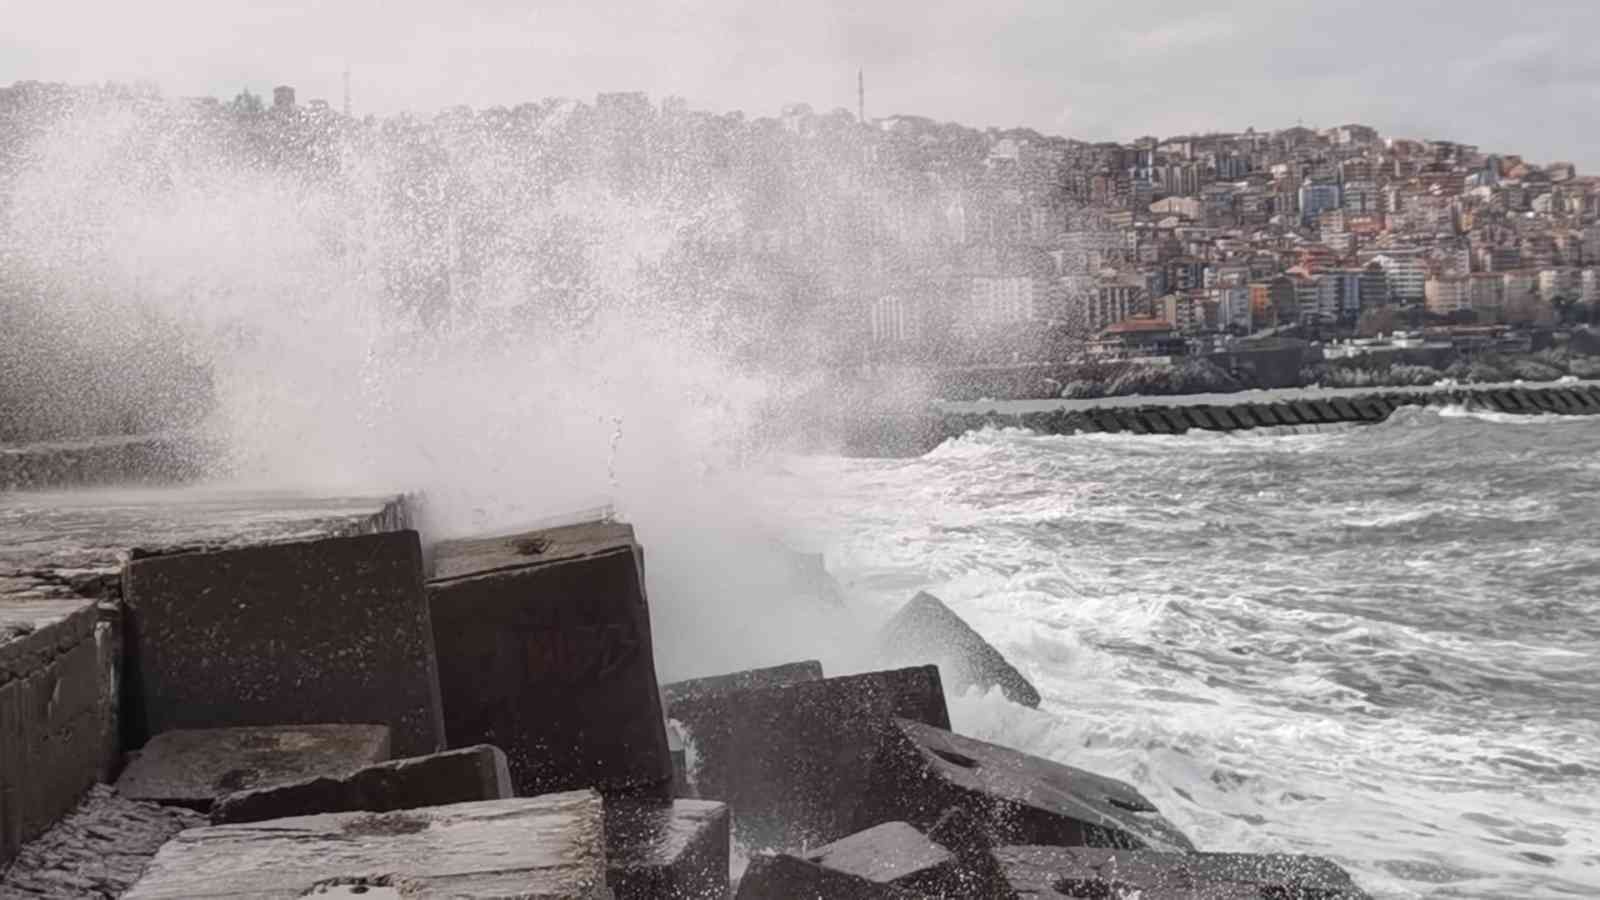 Zonguldak’ta dalgalar liman duvarına ulaştı #zonguldak